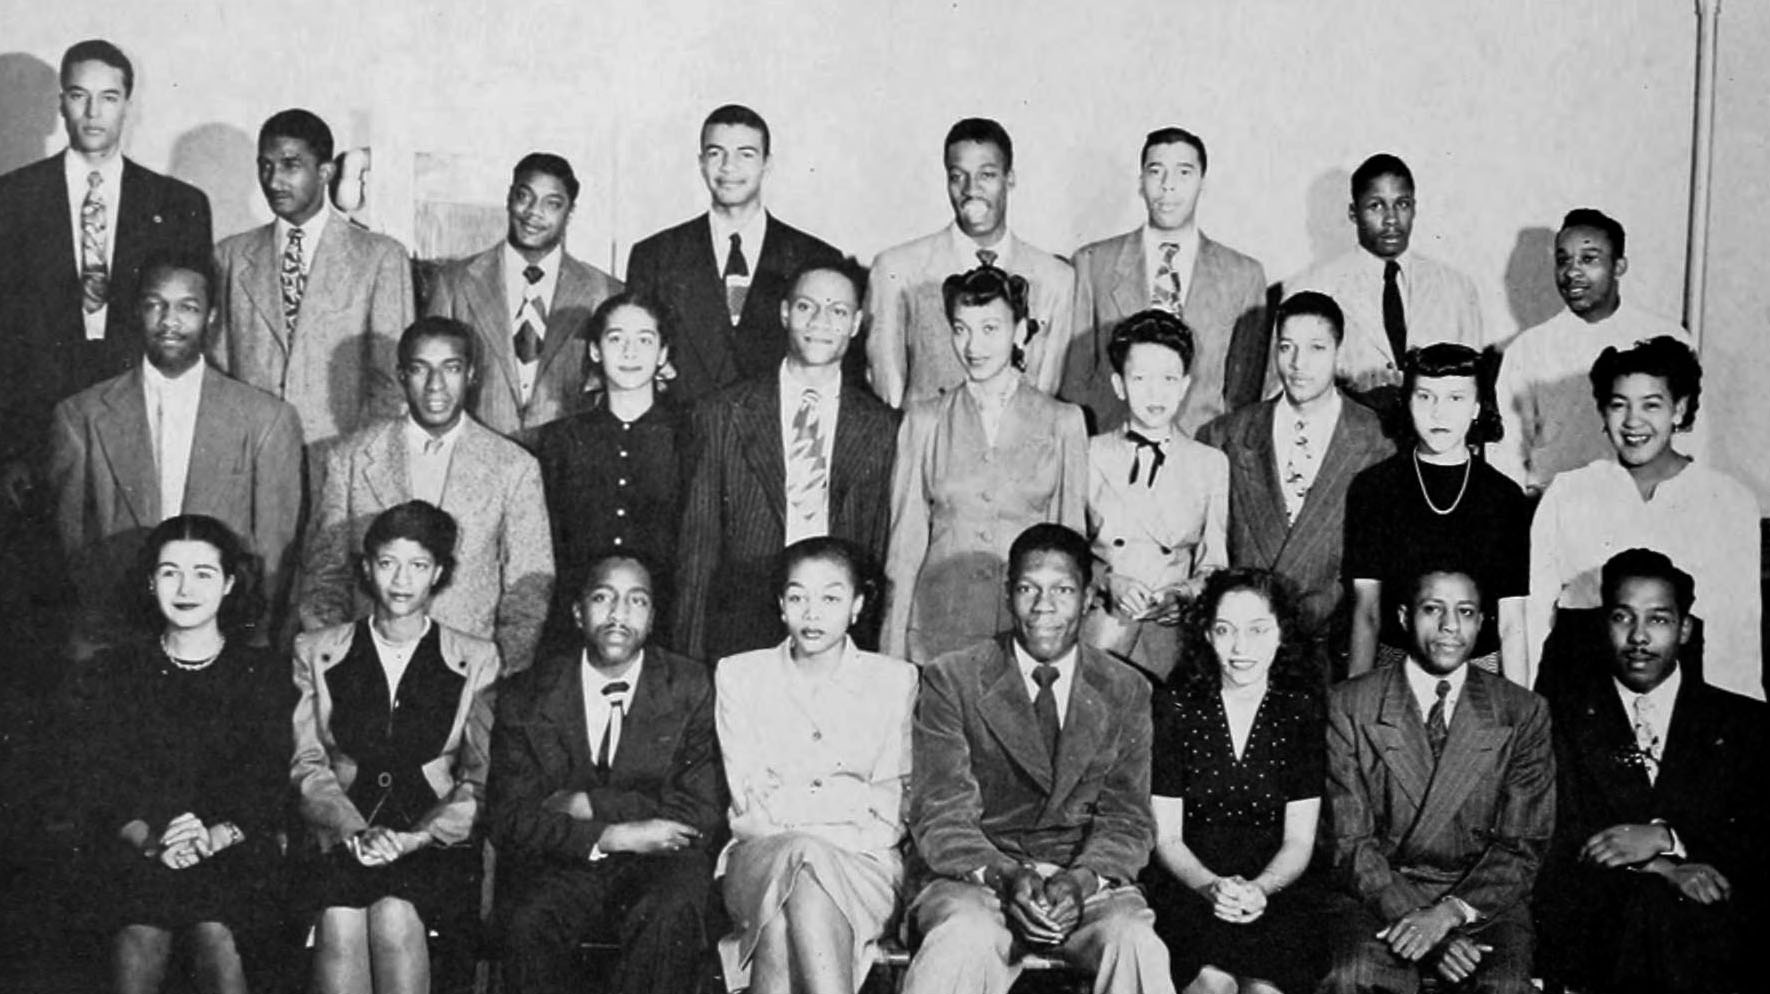 Los Amigos records, 1947-1952